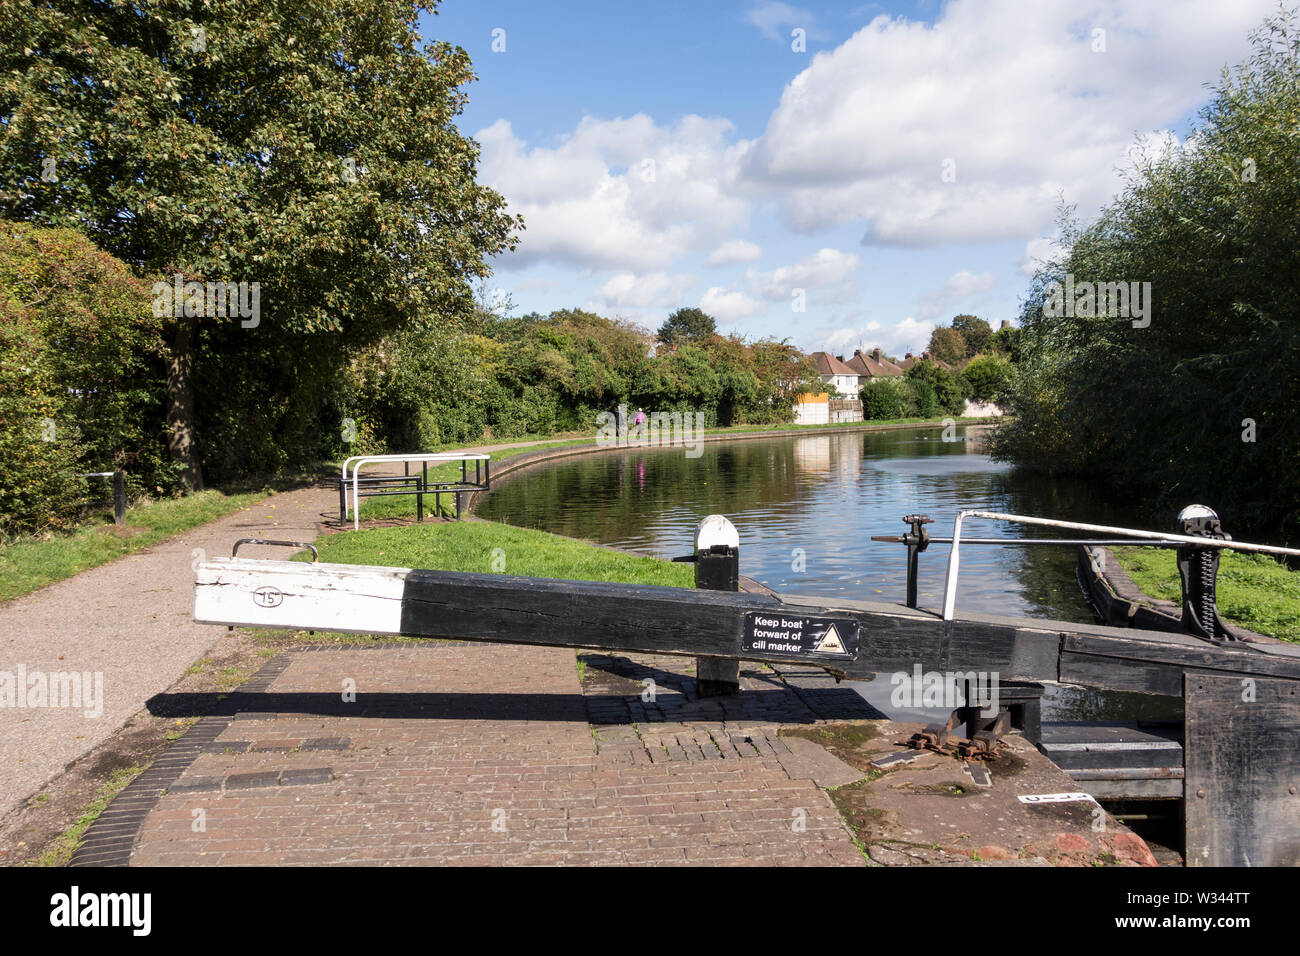 Stourbridge canal, Stourbridge, West Midlands, UK Stock Photo